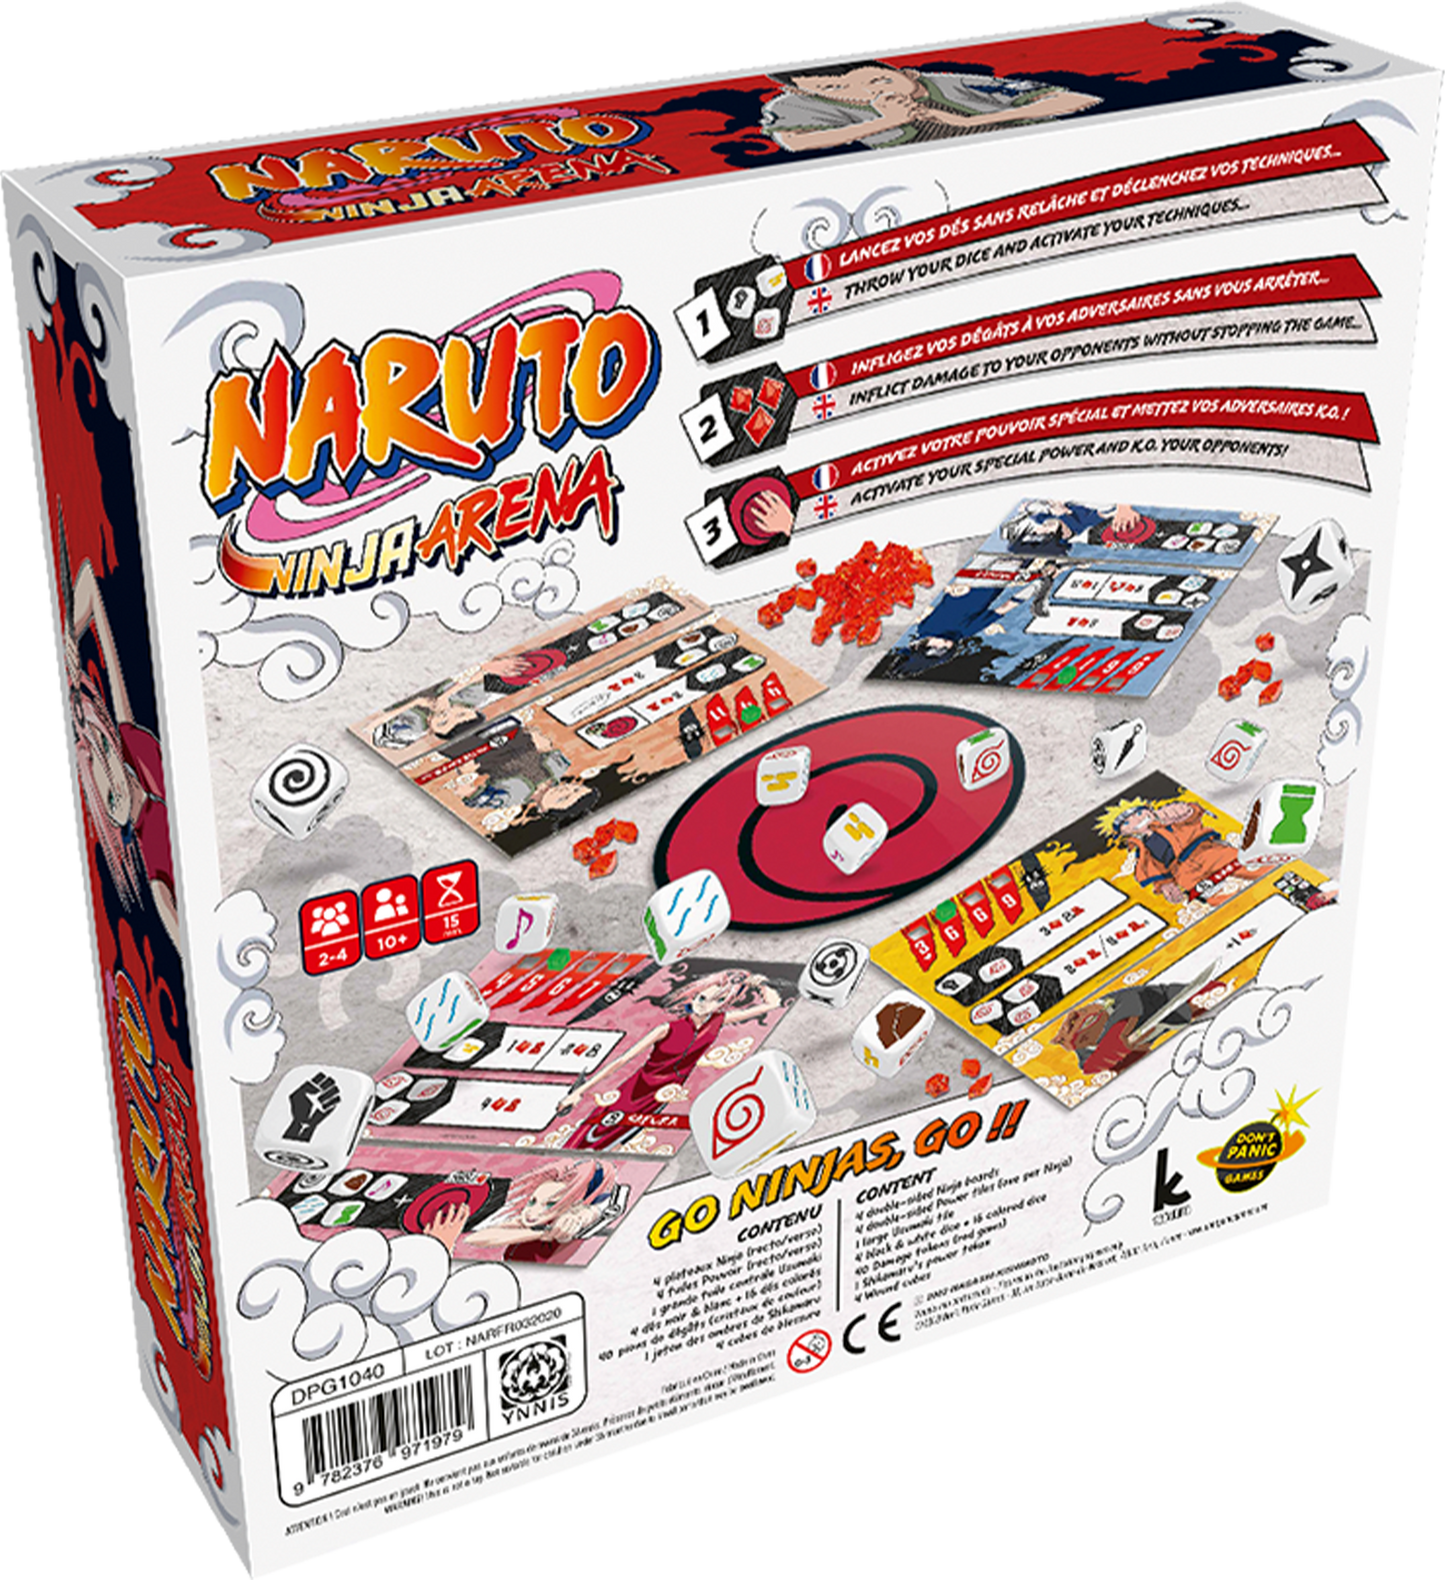 Back of the Naruto Ninja Arena anime board game box